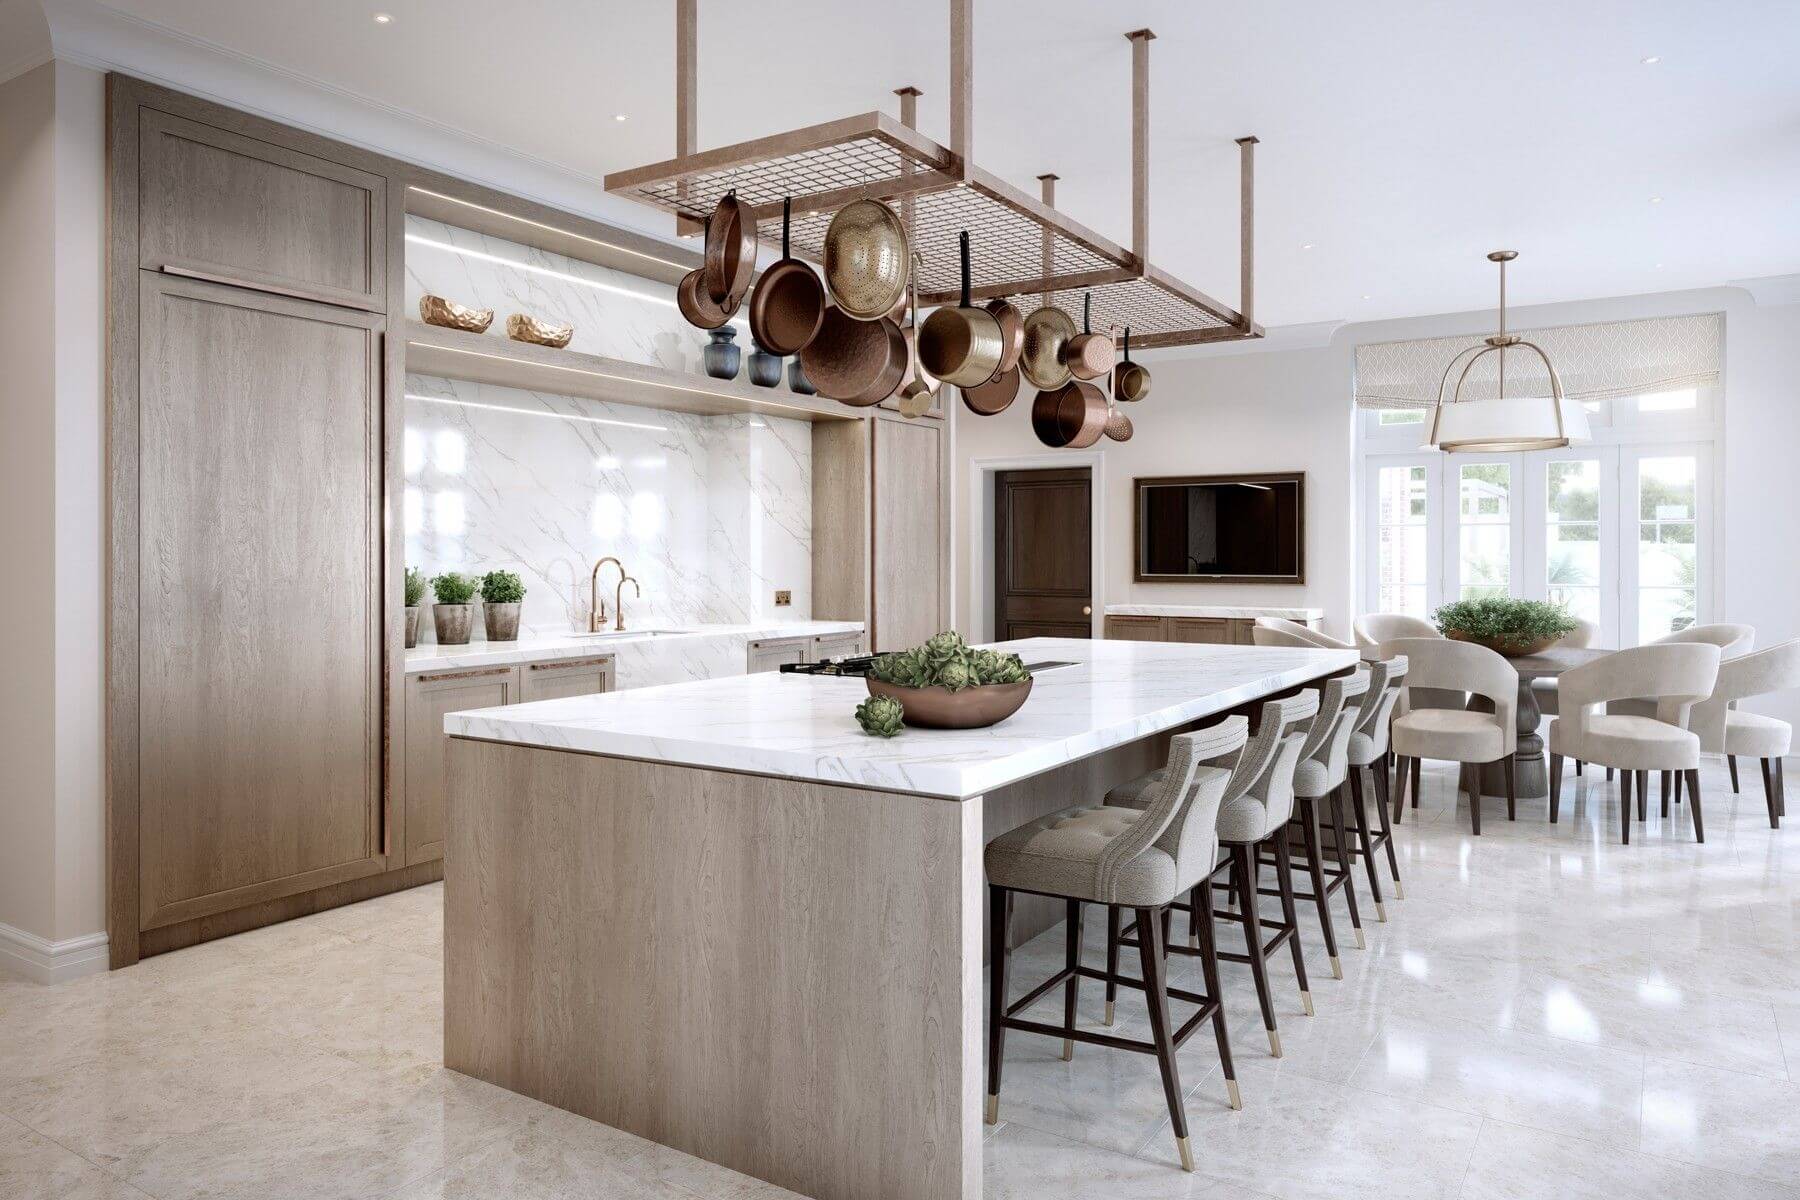 luxurious kitchen design 